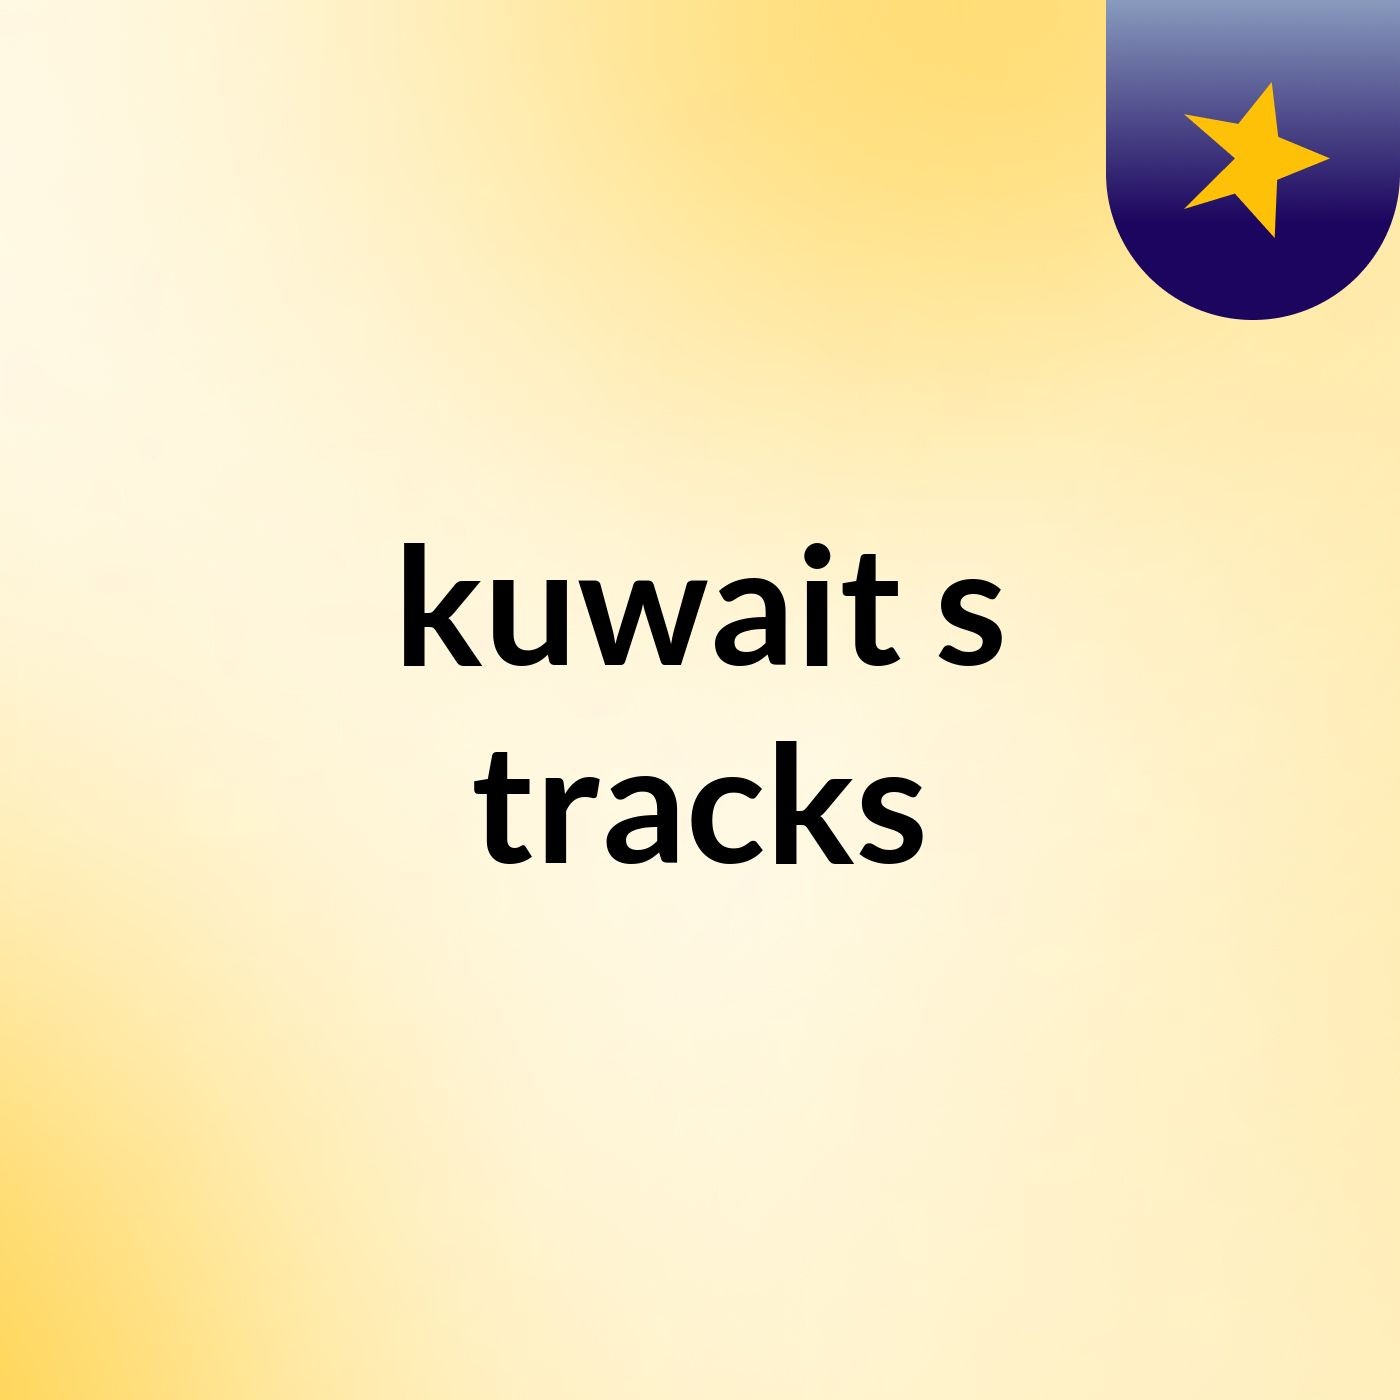 kuwait's tracks